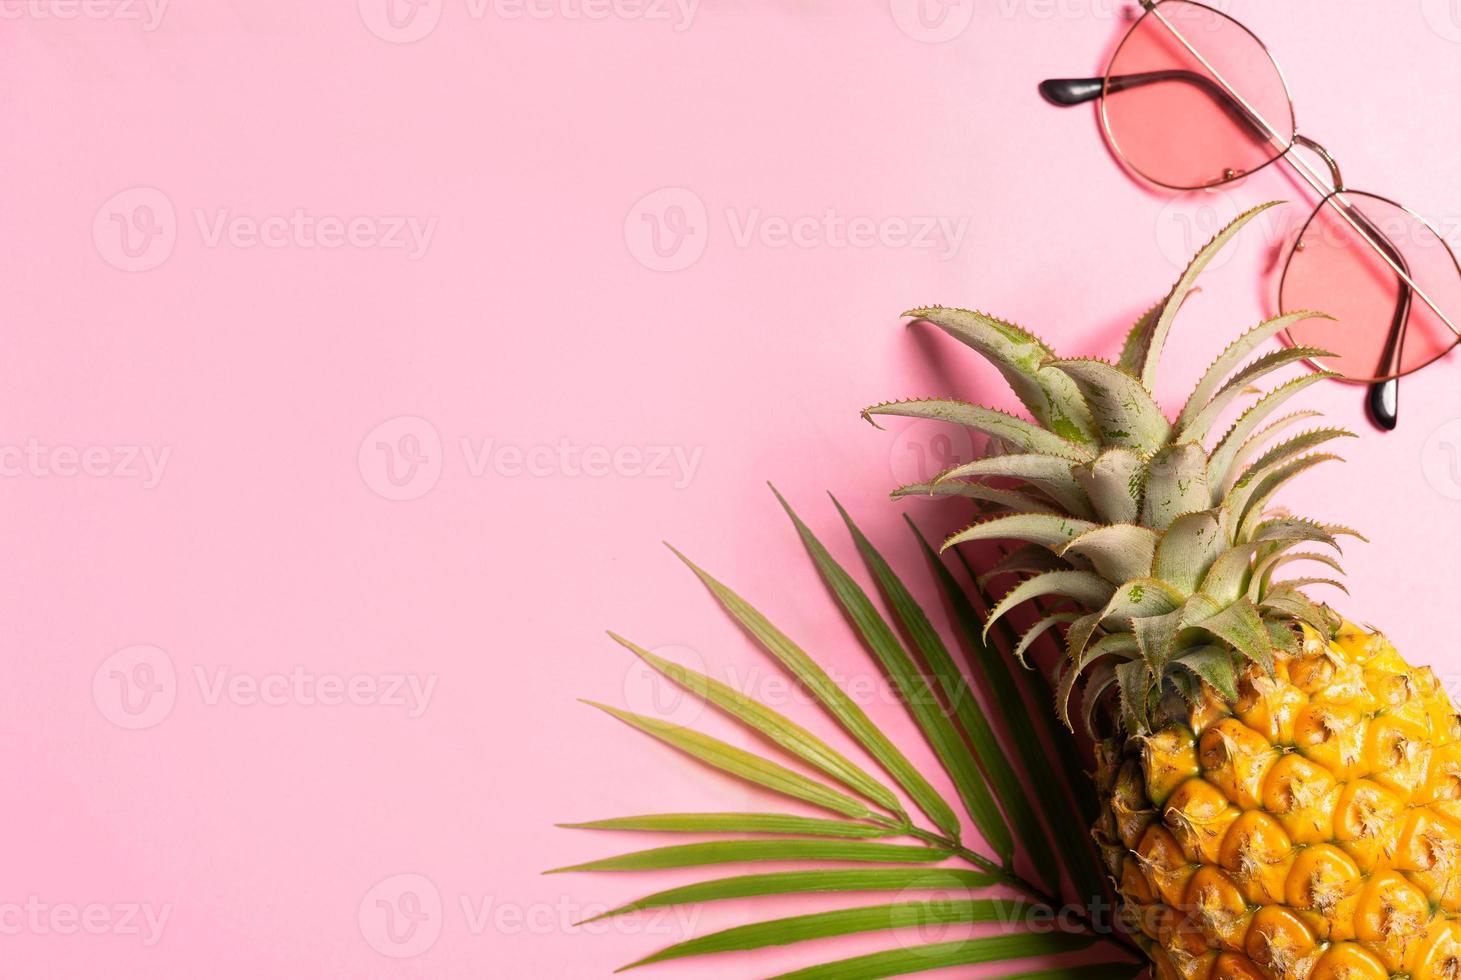 conceito de verão com abacaxi, óculos escuros e folha de palmeira em fundo rosa foto